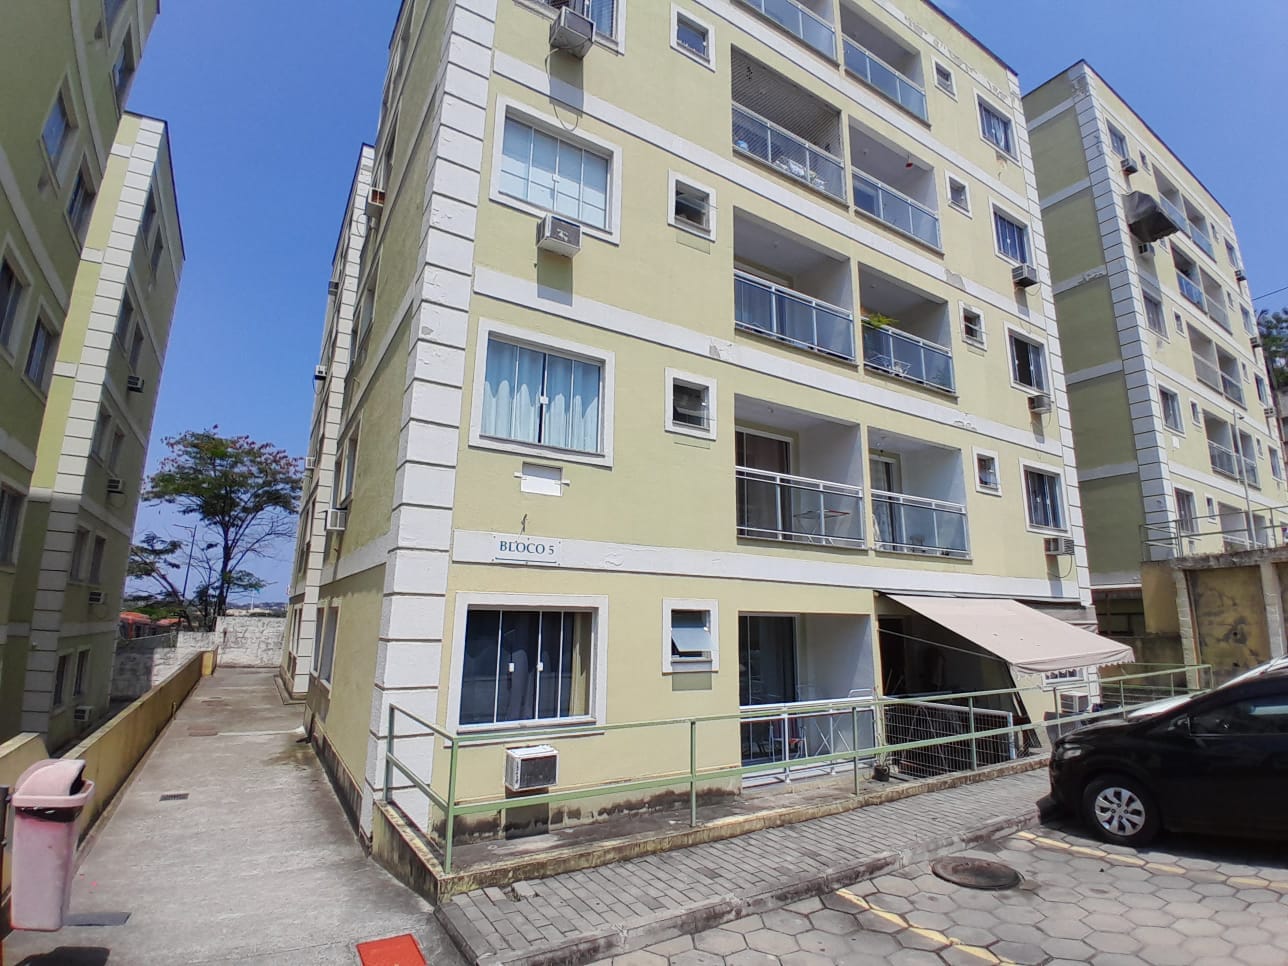 Apartamento em Inoã (Inoã), Maricá/RJ de 55m² 2 quartos para locação R$ 1.300,00/mes